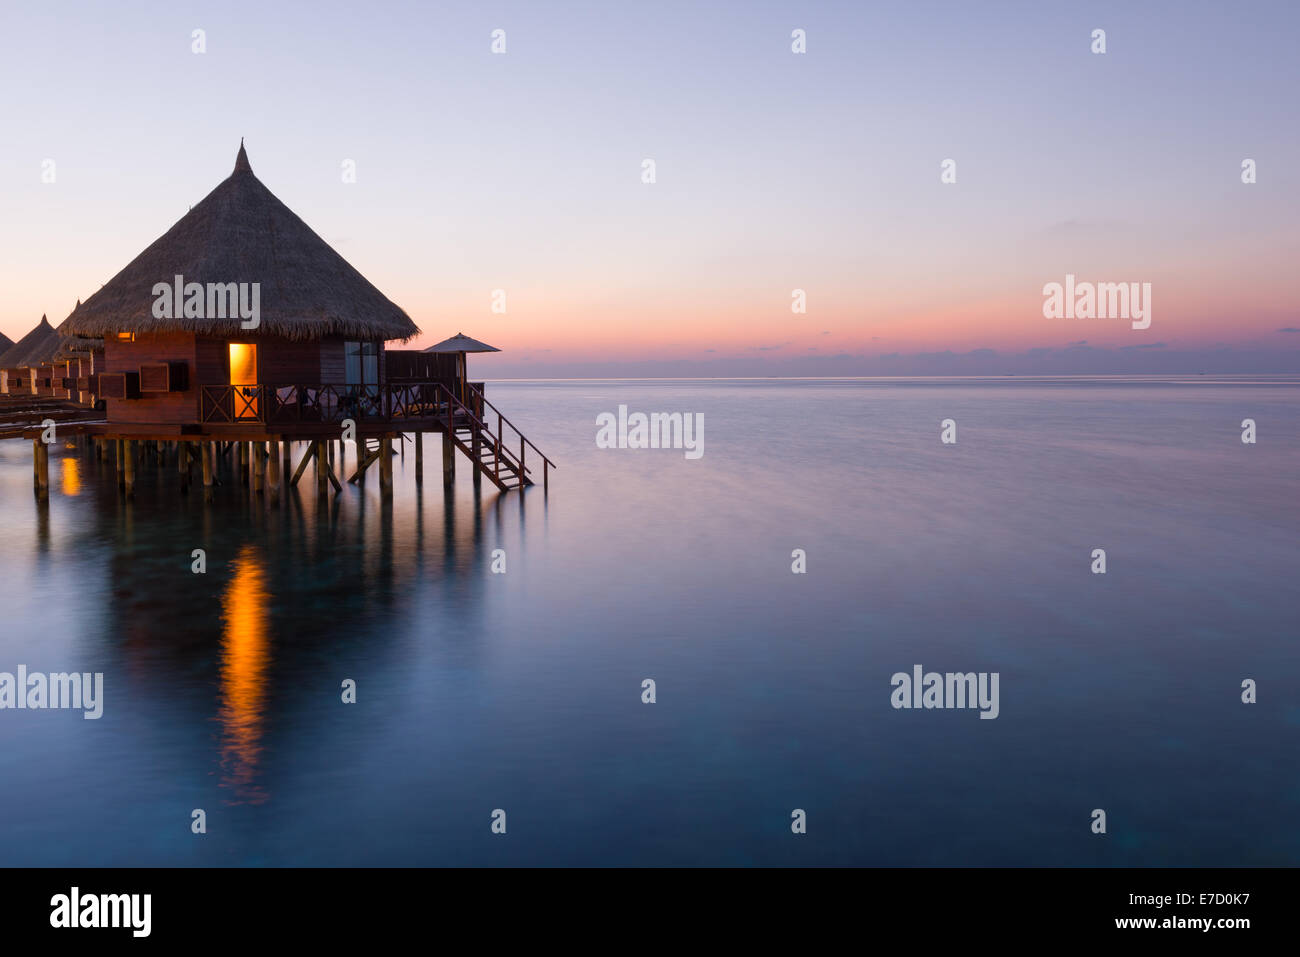 Panorama de la isla tropical resort con bungalows sobre el agua en la noche. Maldivas. El Atolón Ari. Pintoresca puesta de sol sobre el océano. Foto de stock